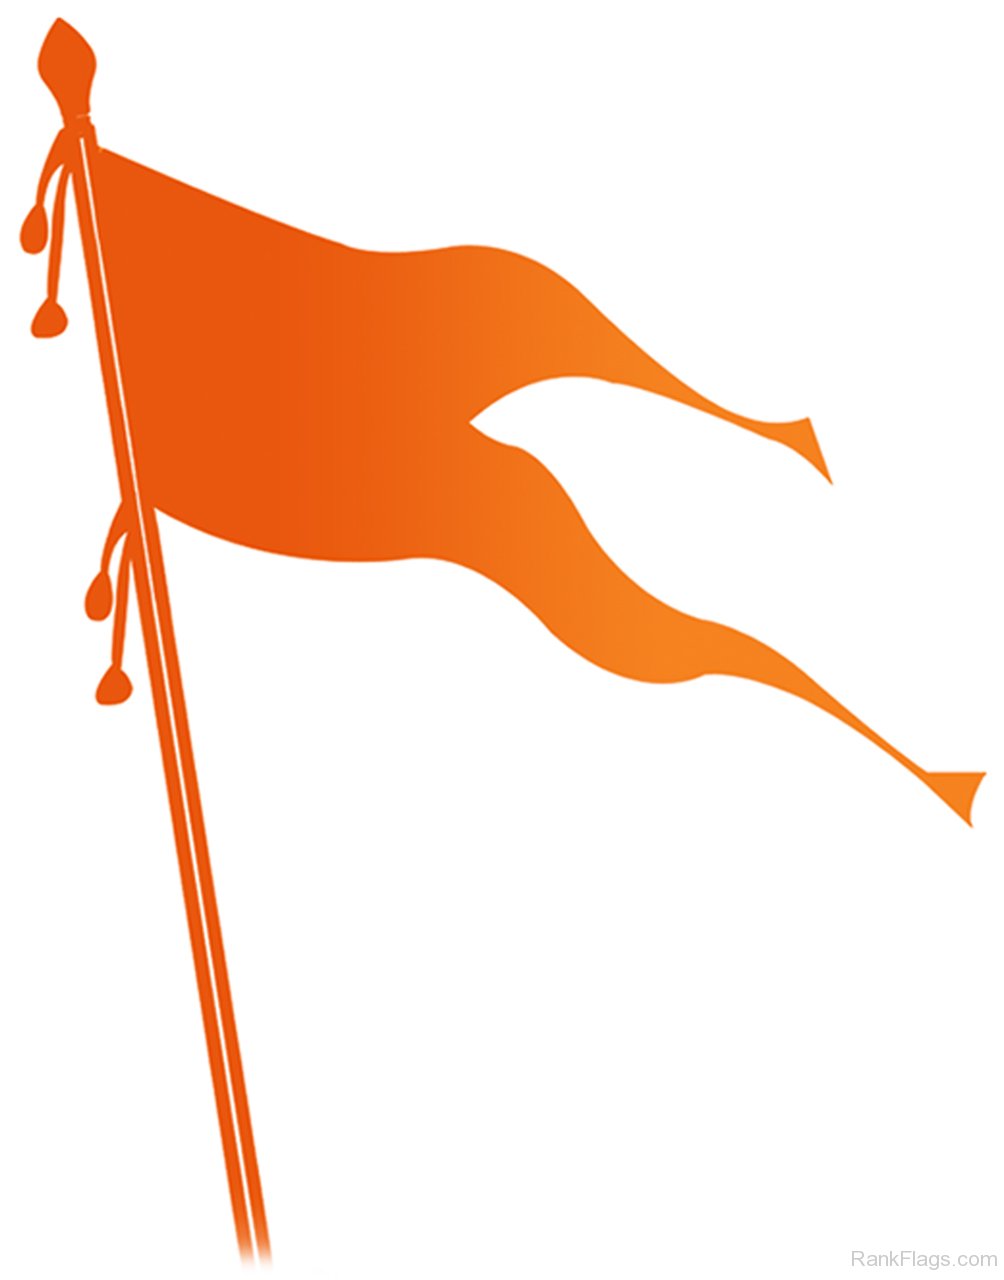 Shiv Sena Flag Rankflags Com Collection Of Flags